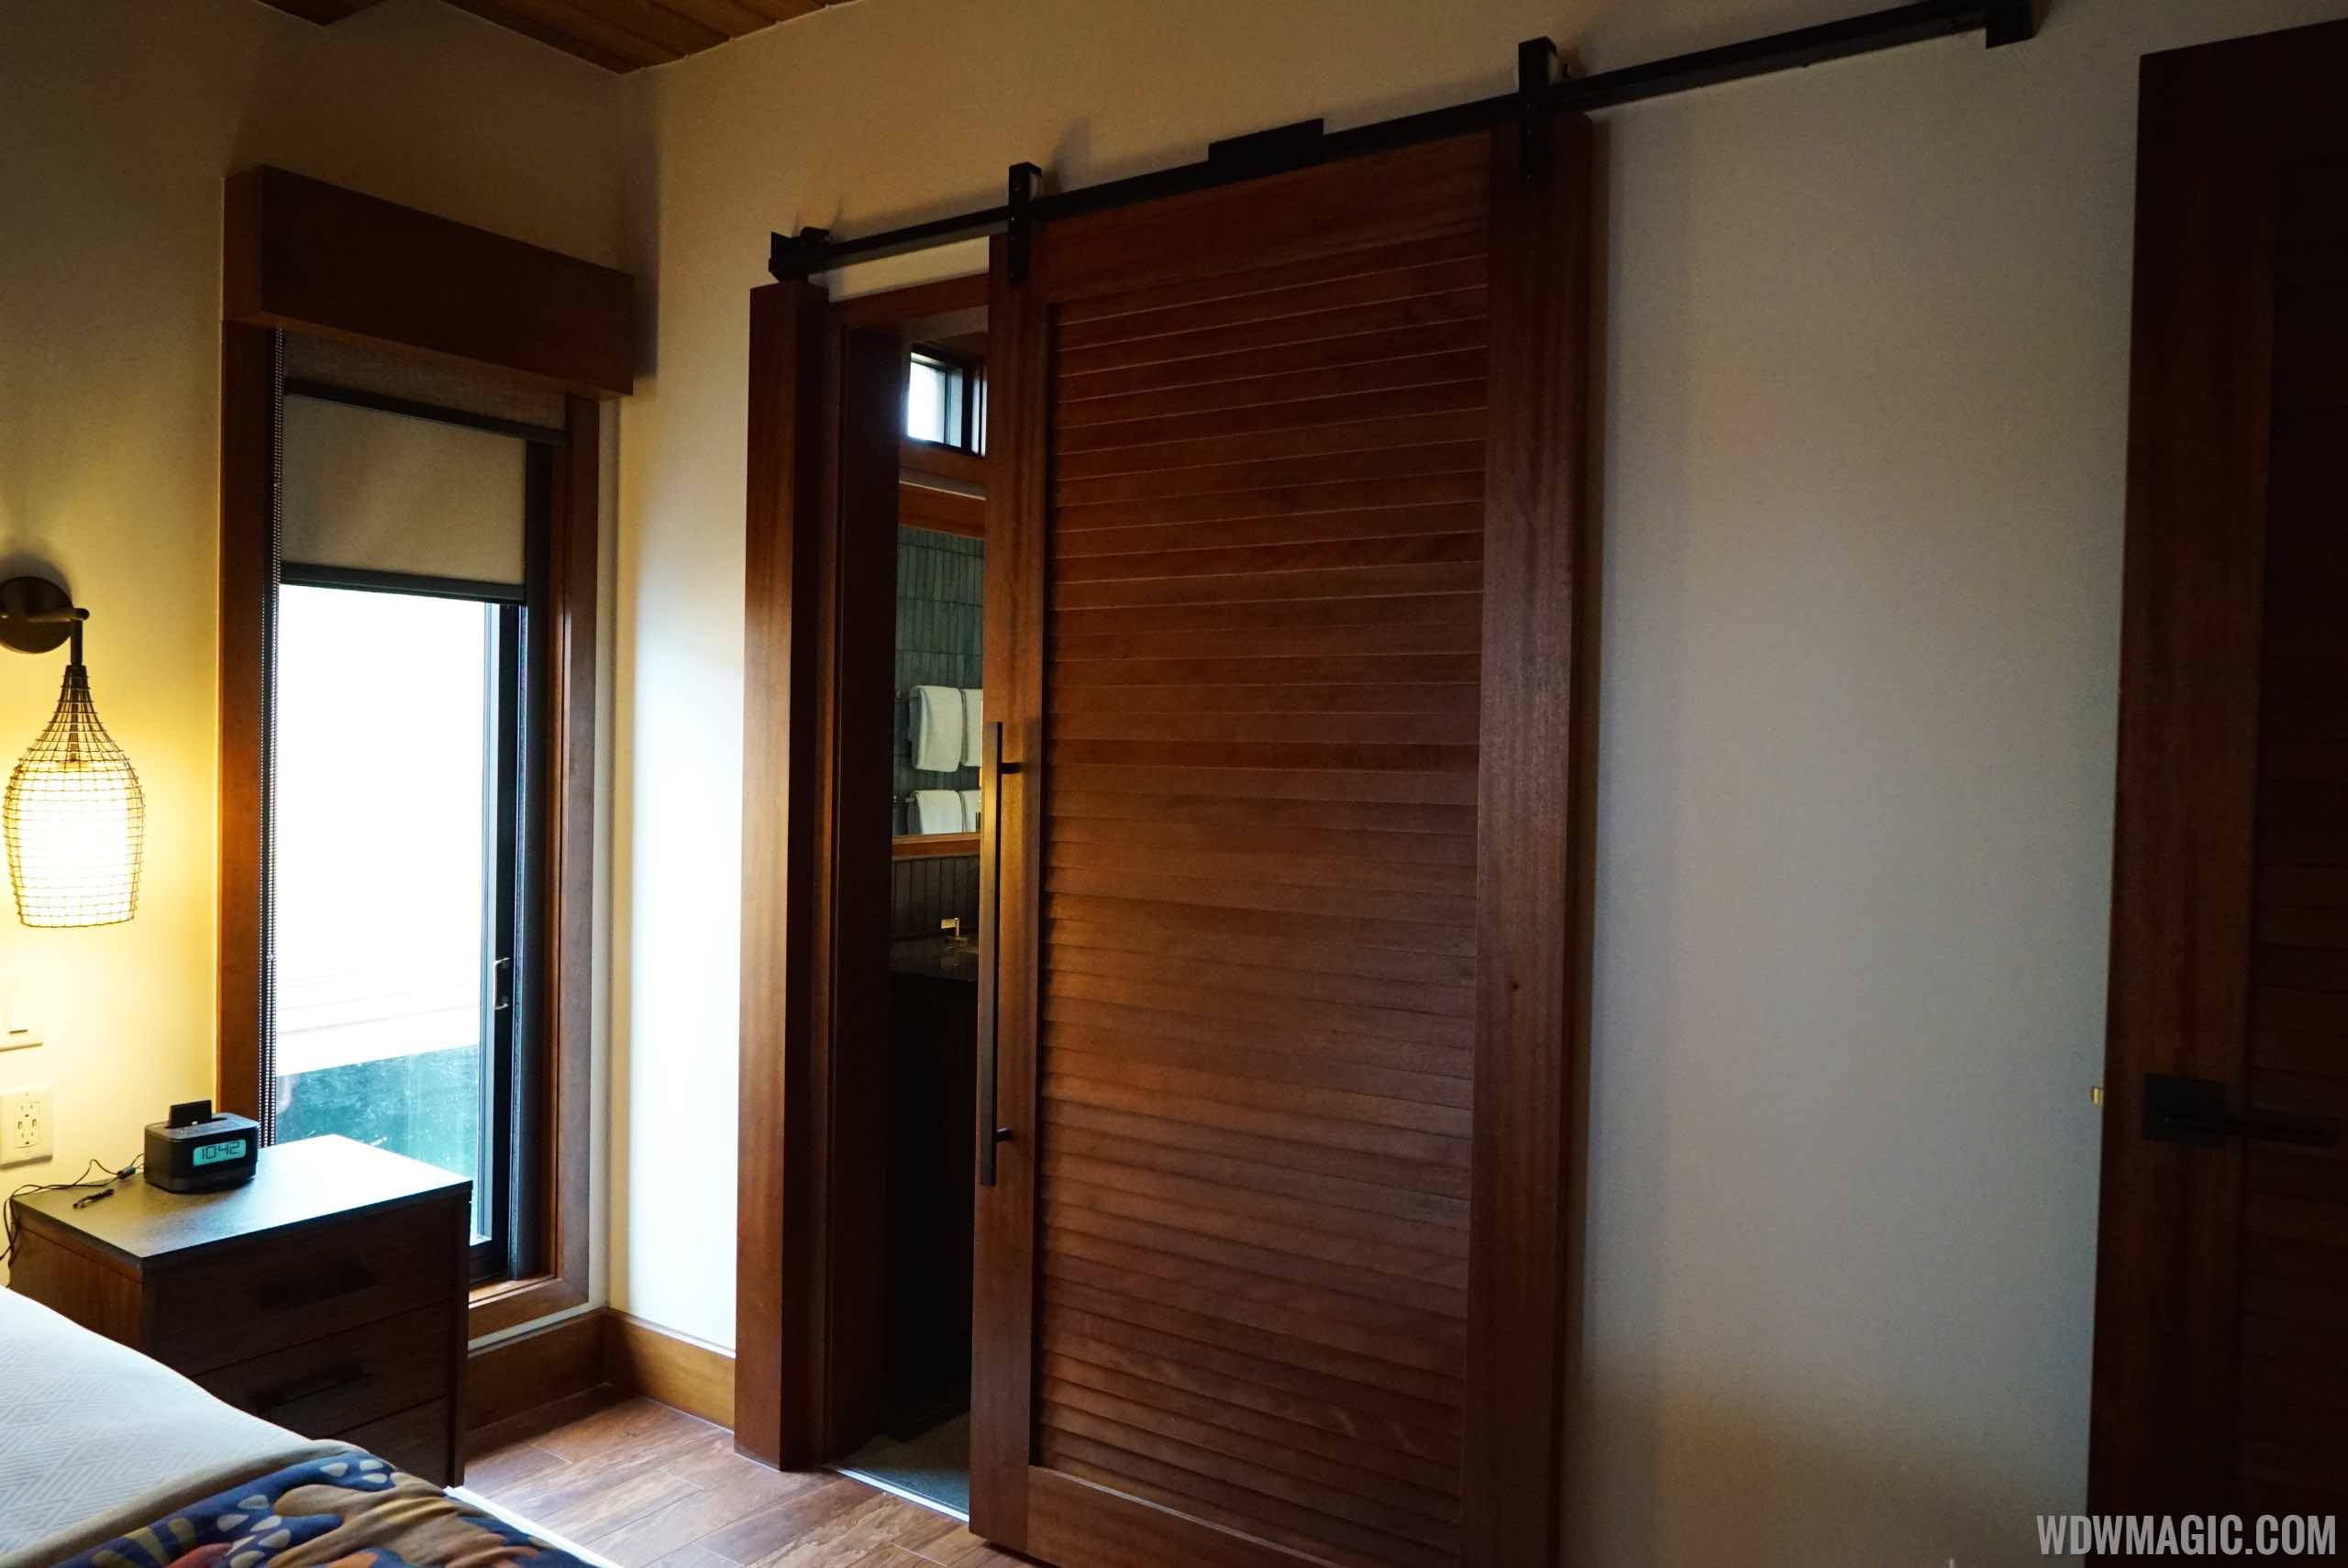 Disney's Polynesian Village Resort Bora Bora Bungalow - Door into master bathroom